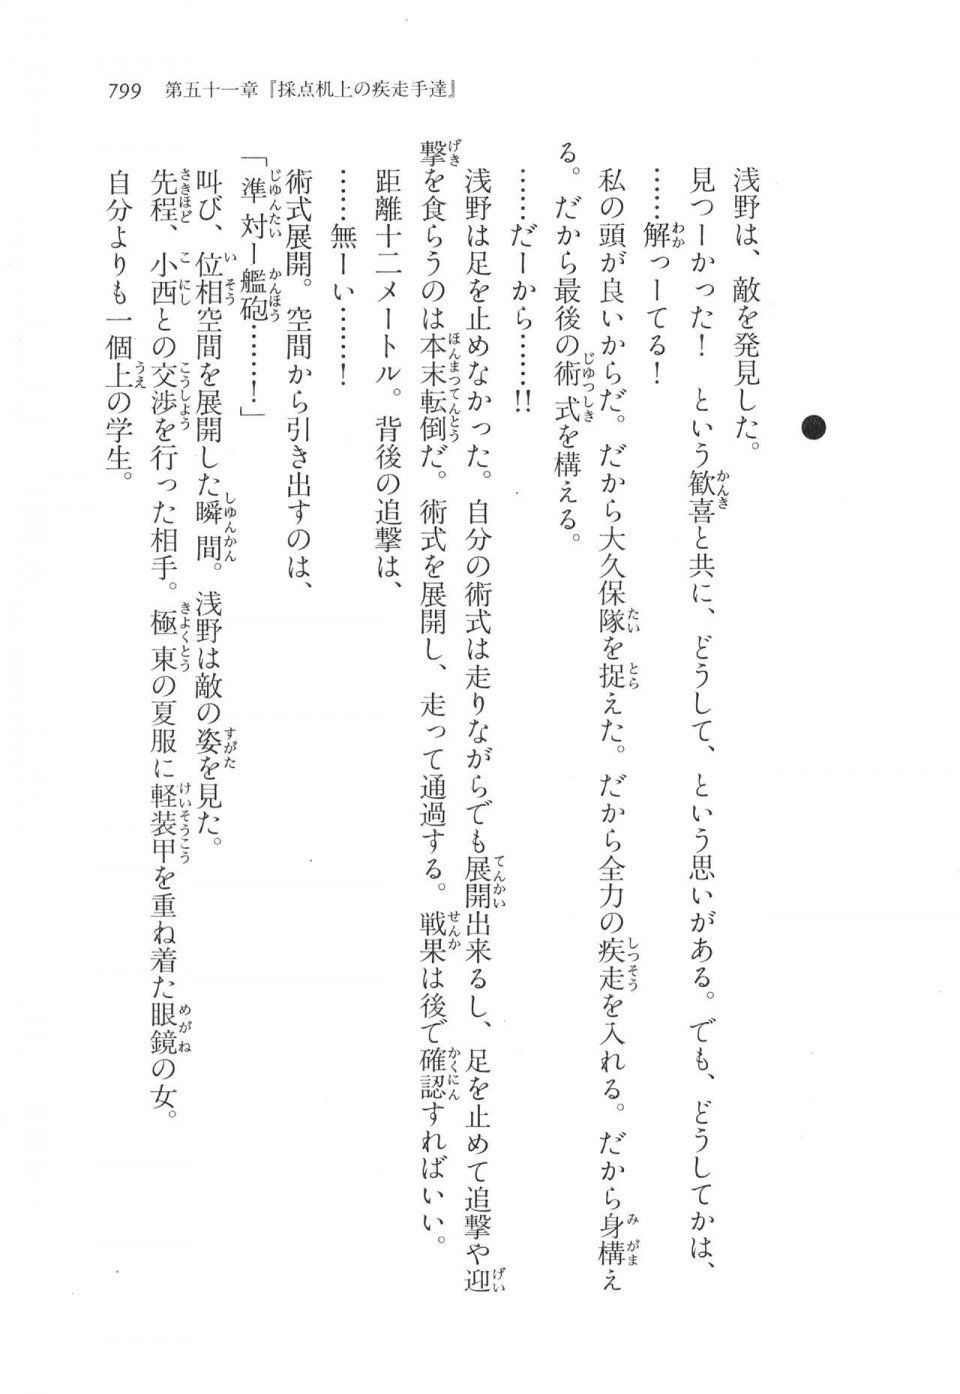 Kyoukai Senjou no Horizon LN Vol 17(7B) - Photo #801